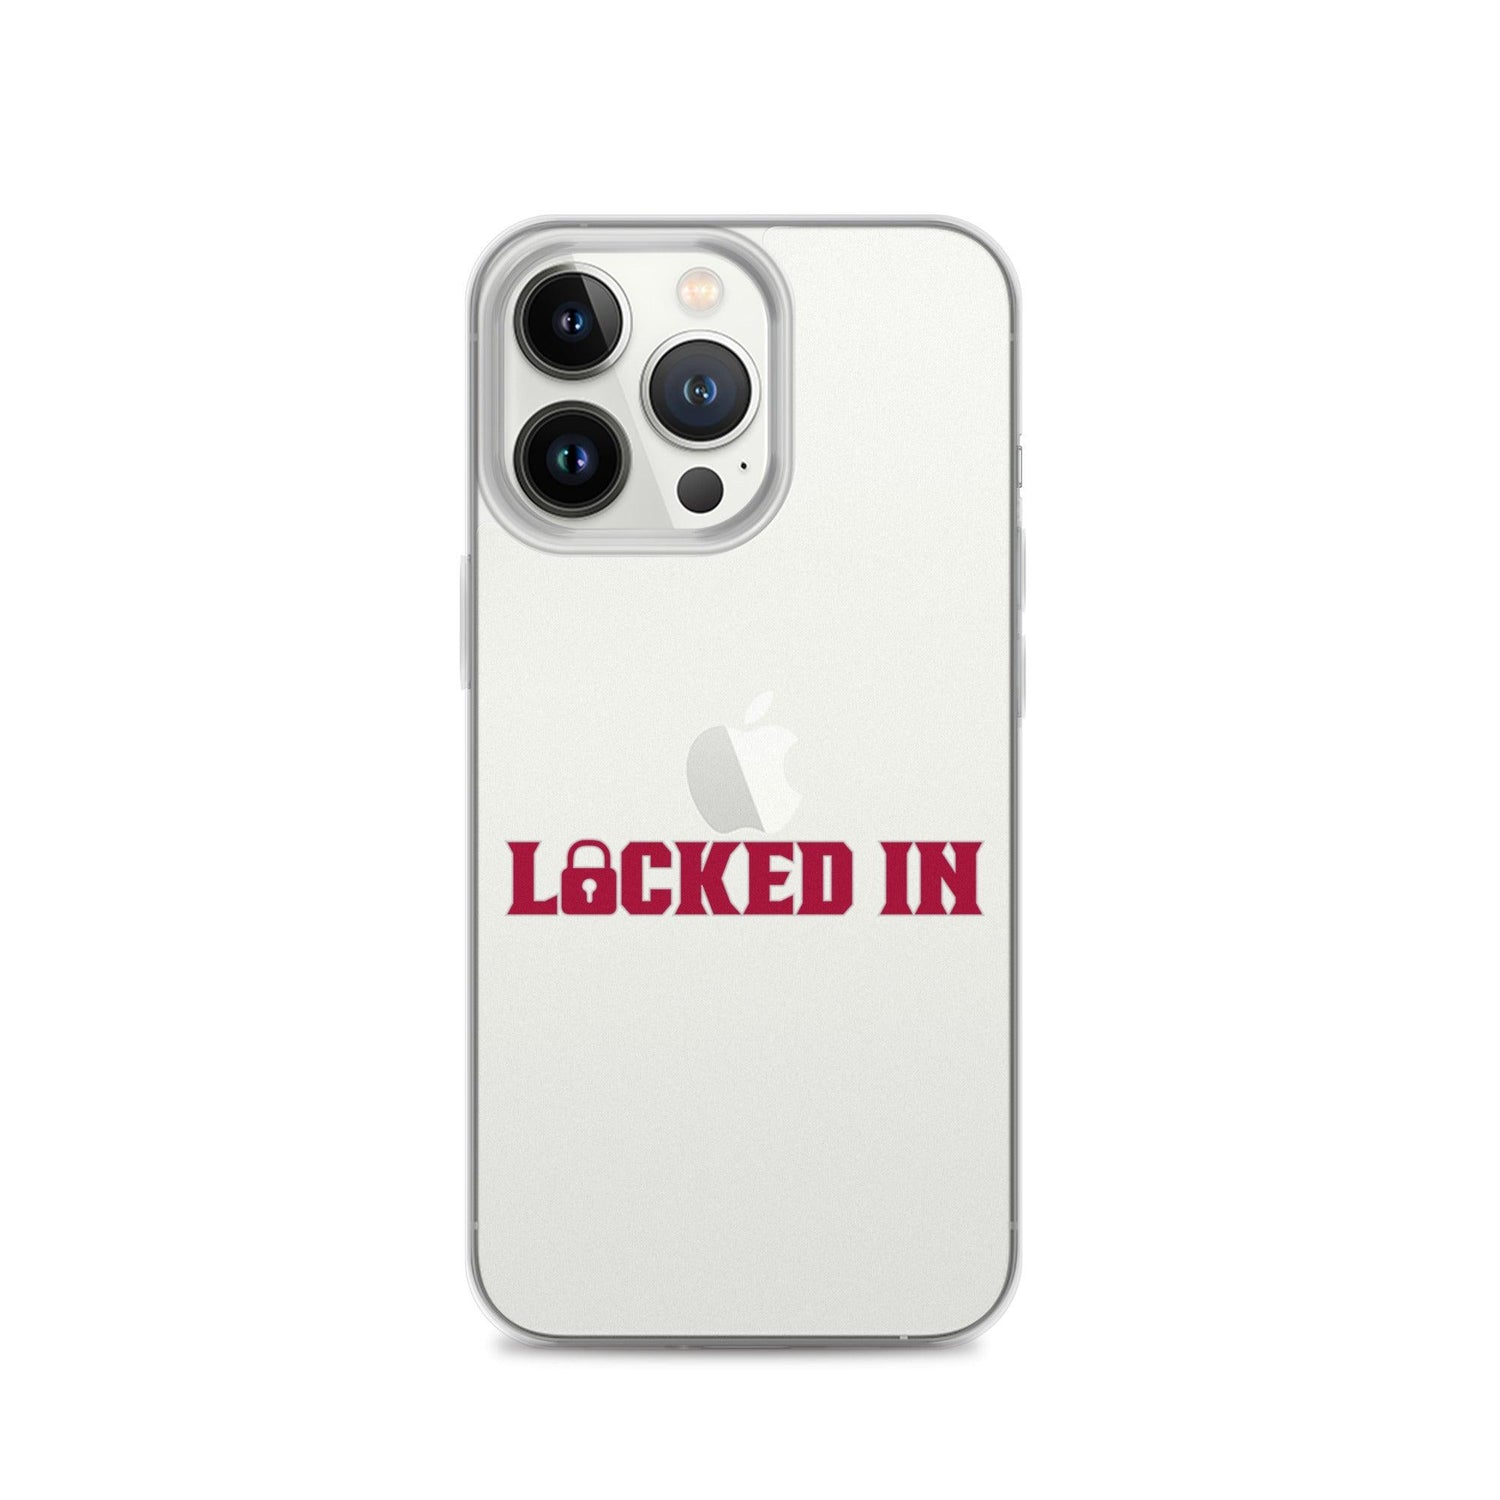 Monkell Goodwine "Locked In" iPhone Case - Fan Arch